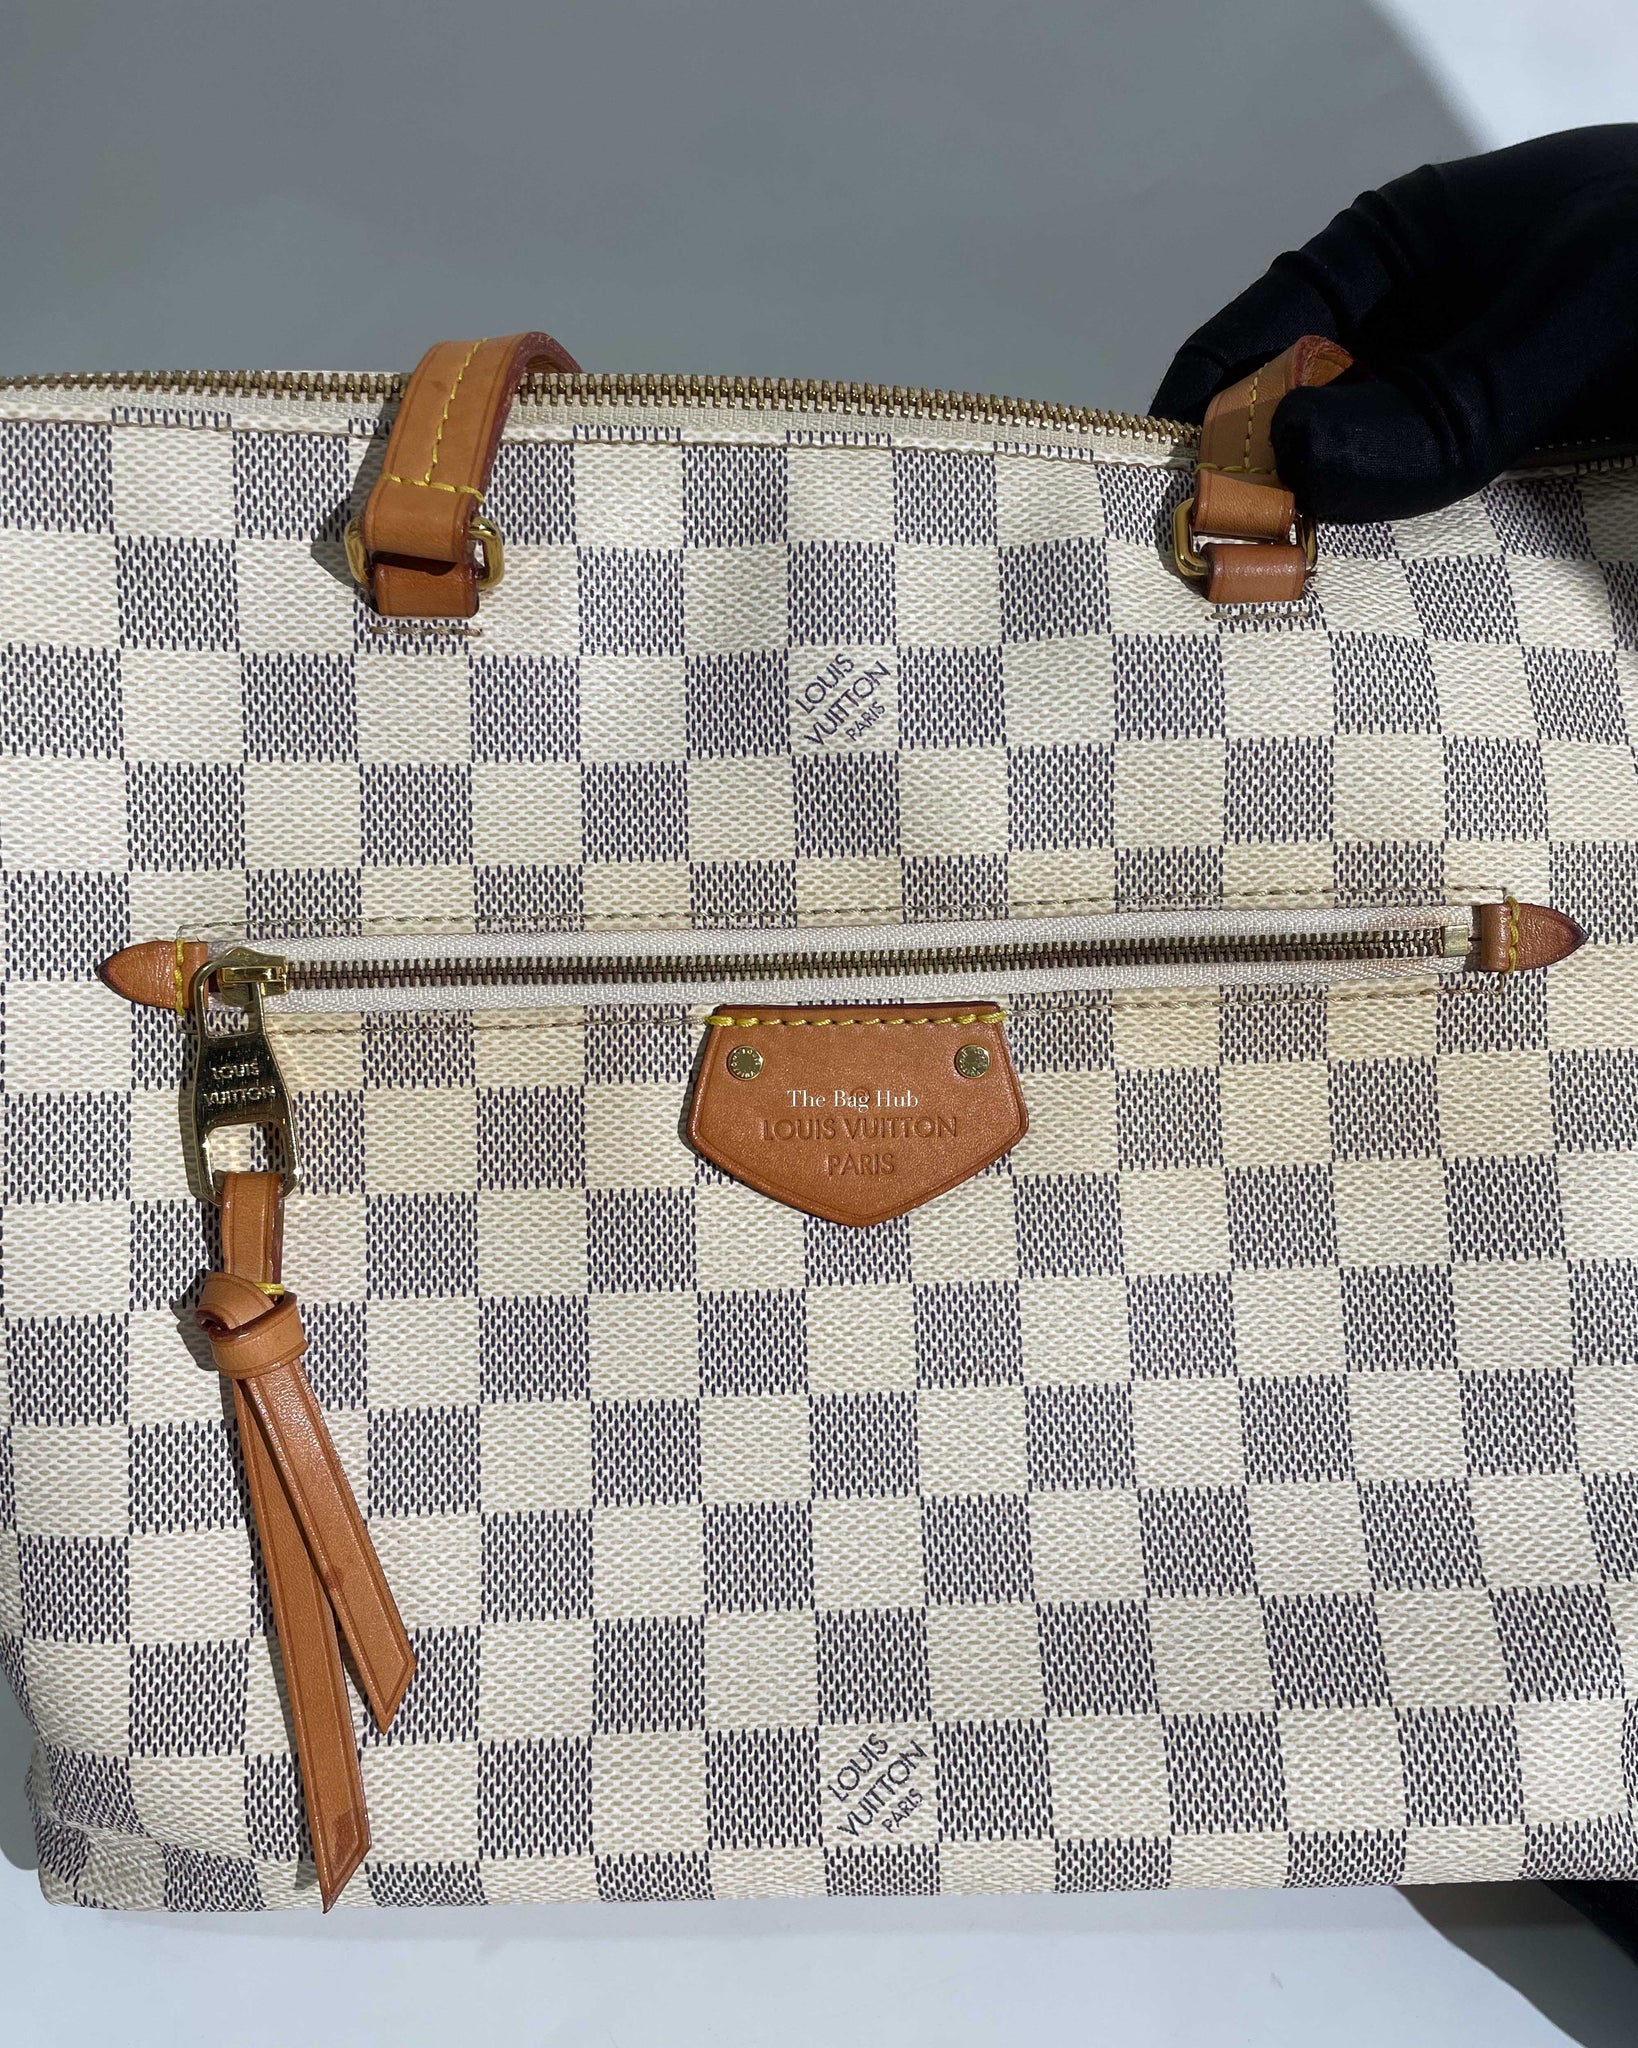 Louis Vuitton Iena mm Damier Azur Shoulder Bag White